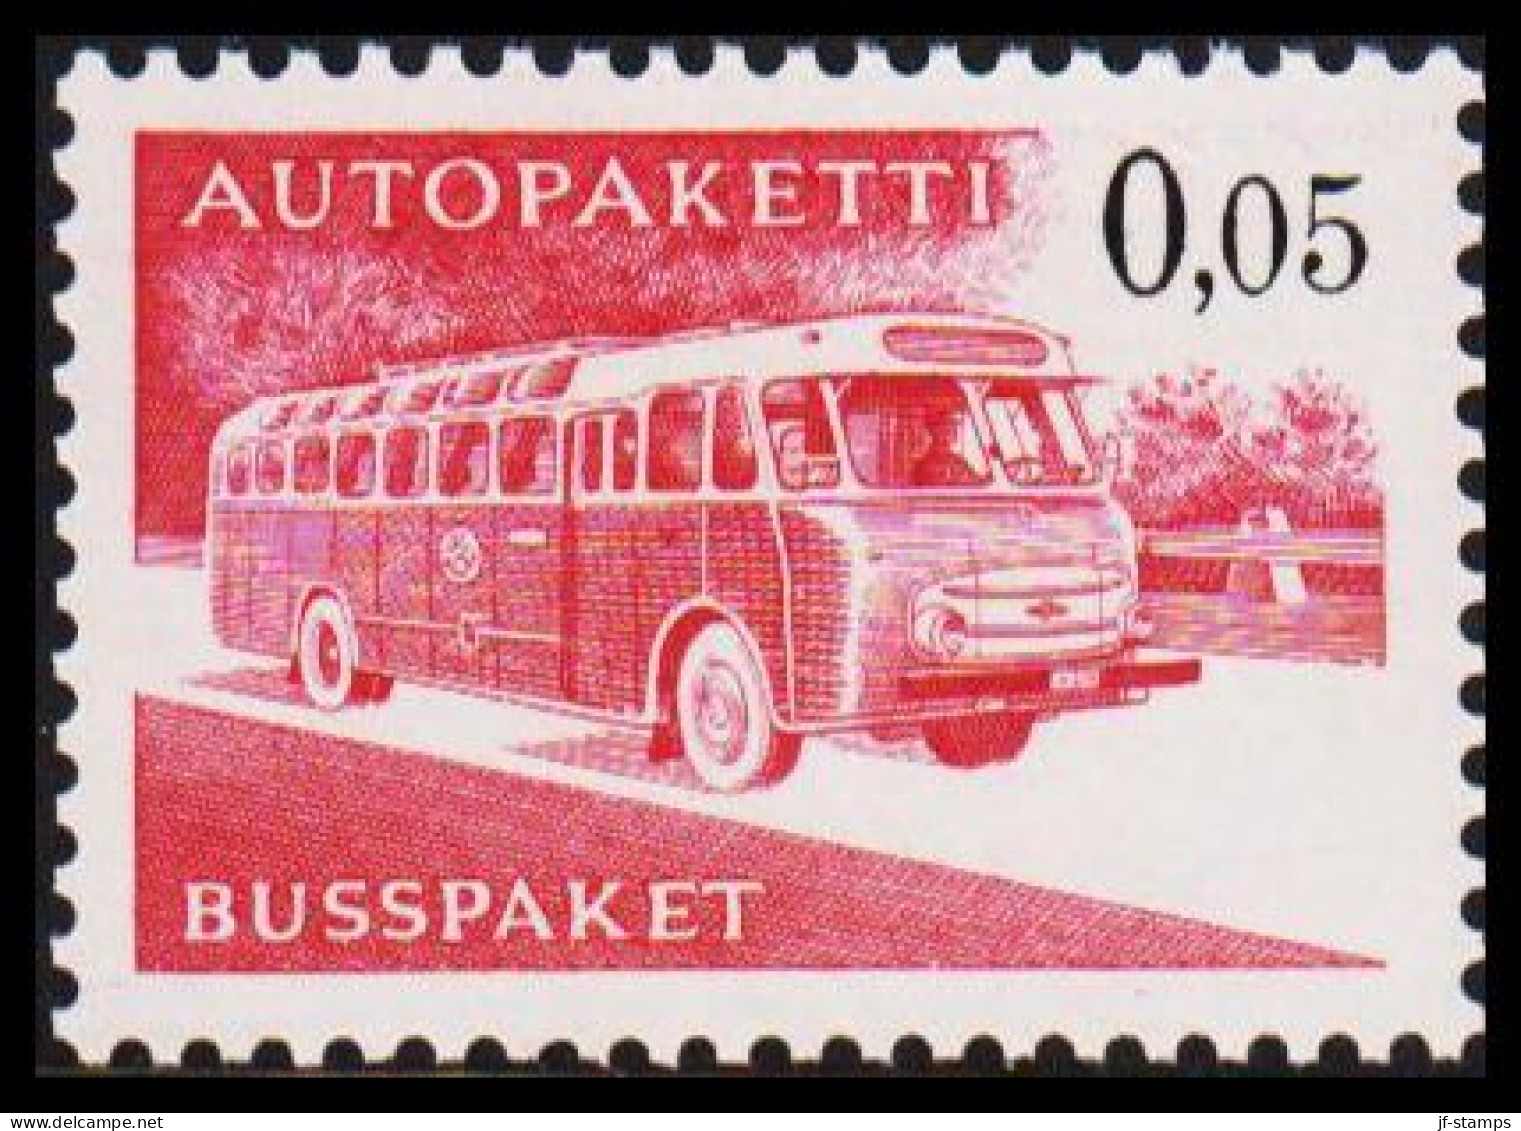 1963-1980. FINLAND. Mail Bus. 0,05 Mk. AUTOPAKETTI - BUSSPAKET Never Hinged. Normal Paper. (Michel AP 10x) - JF535622 - Colis Par Autobus